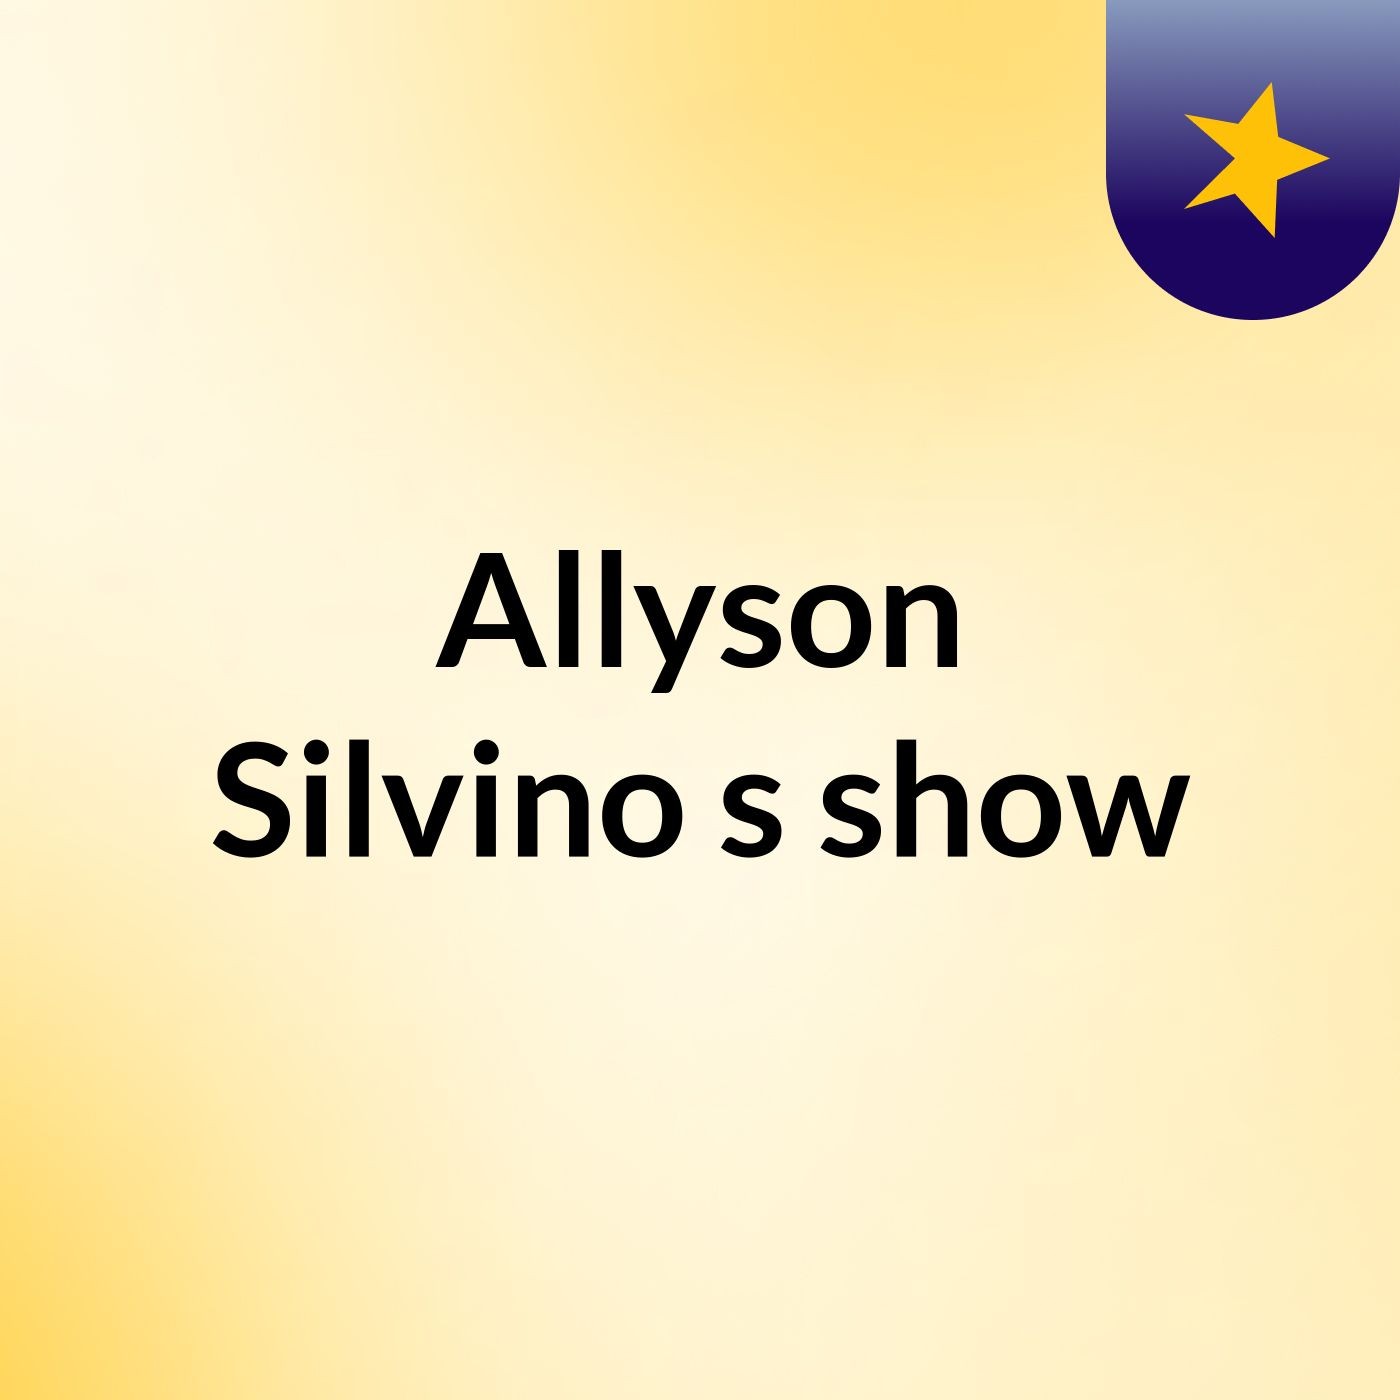 Allyson Silvino's show